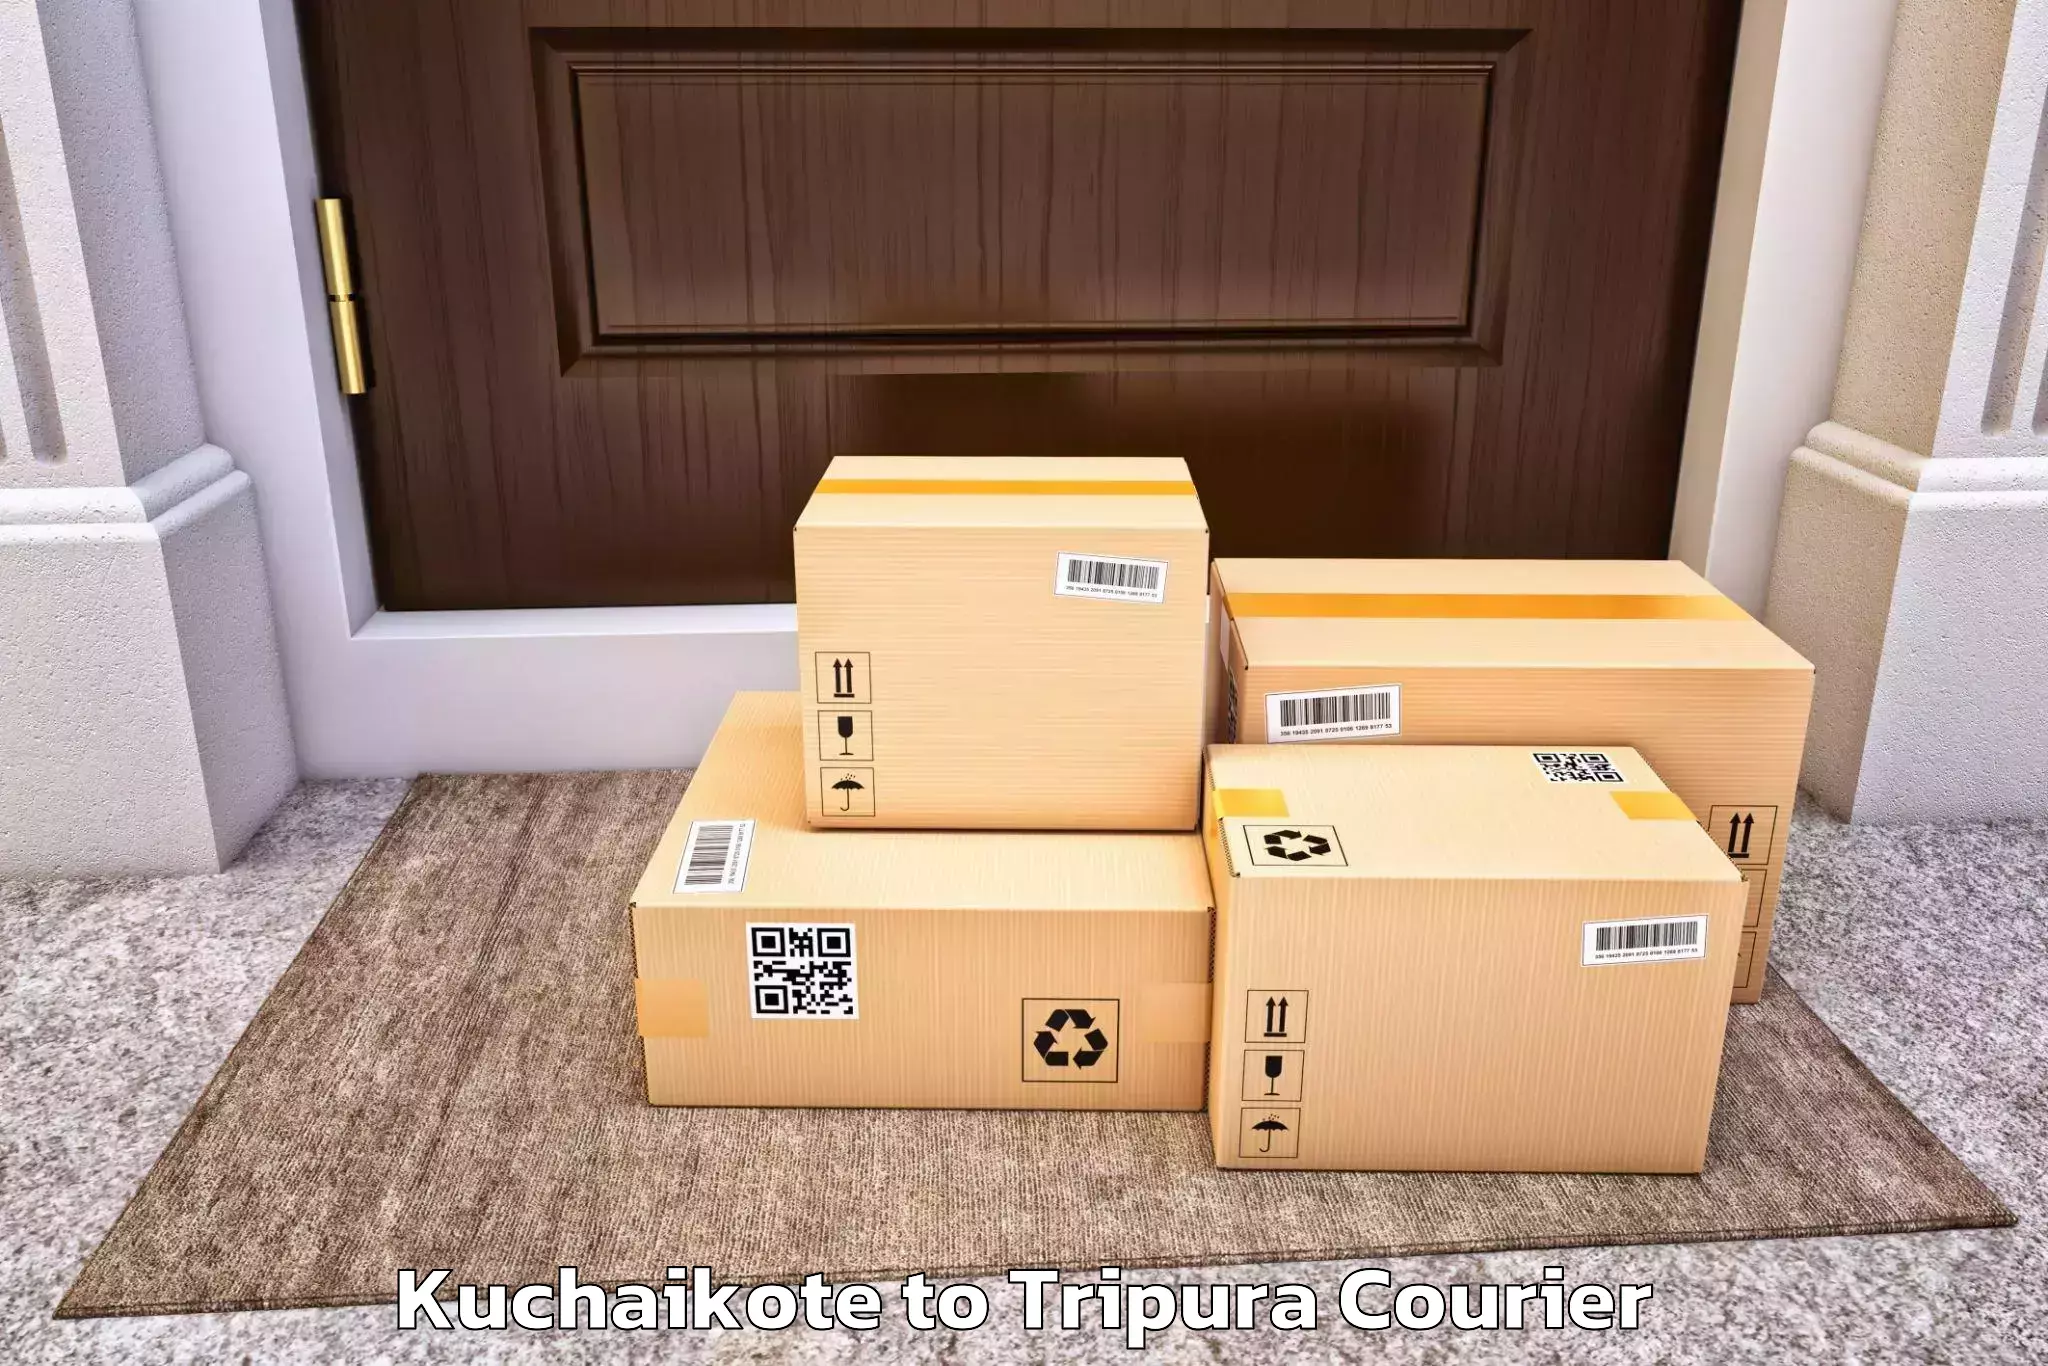 Efficient furniture relocation in Kuchaikote to Ambassa